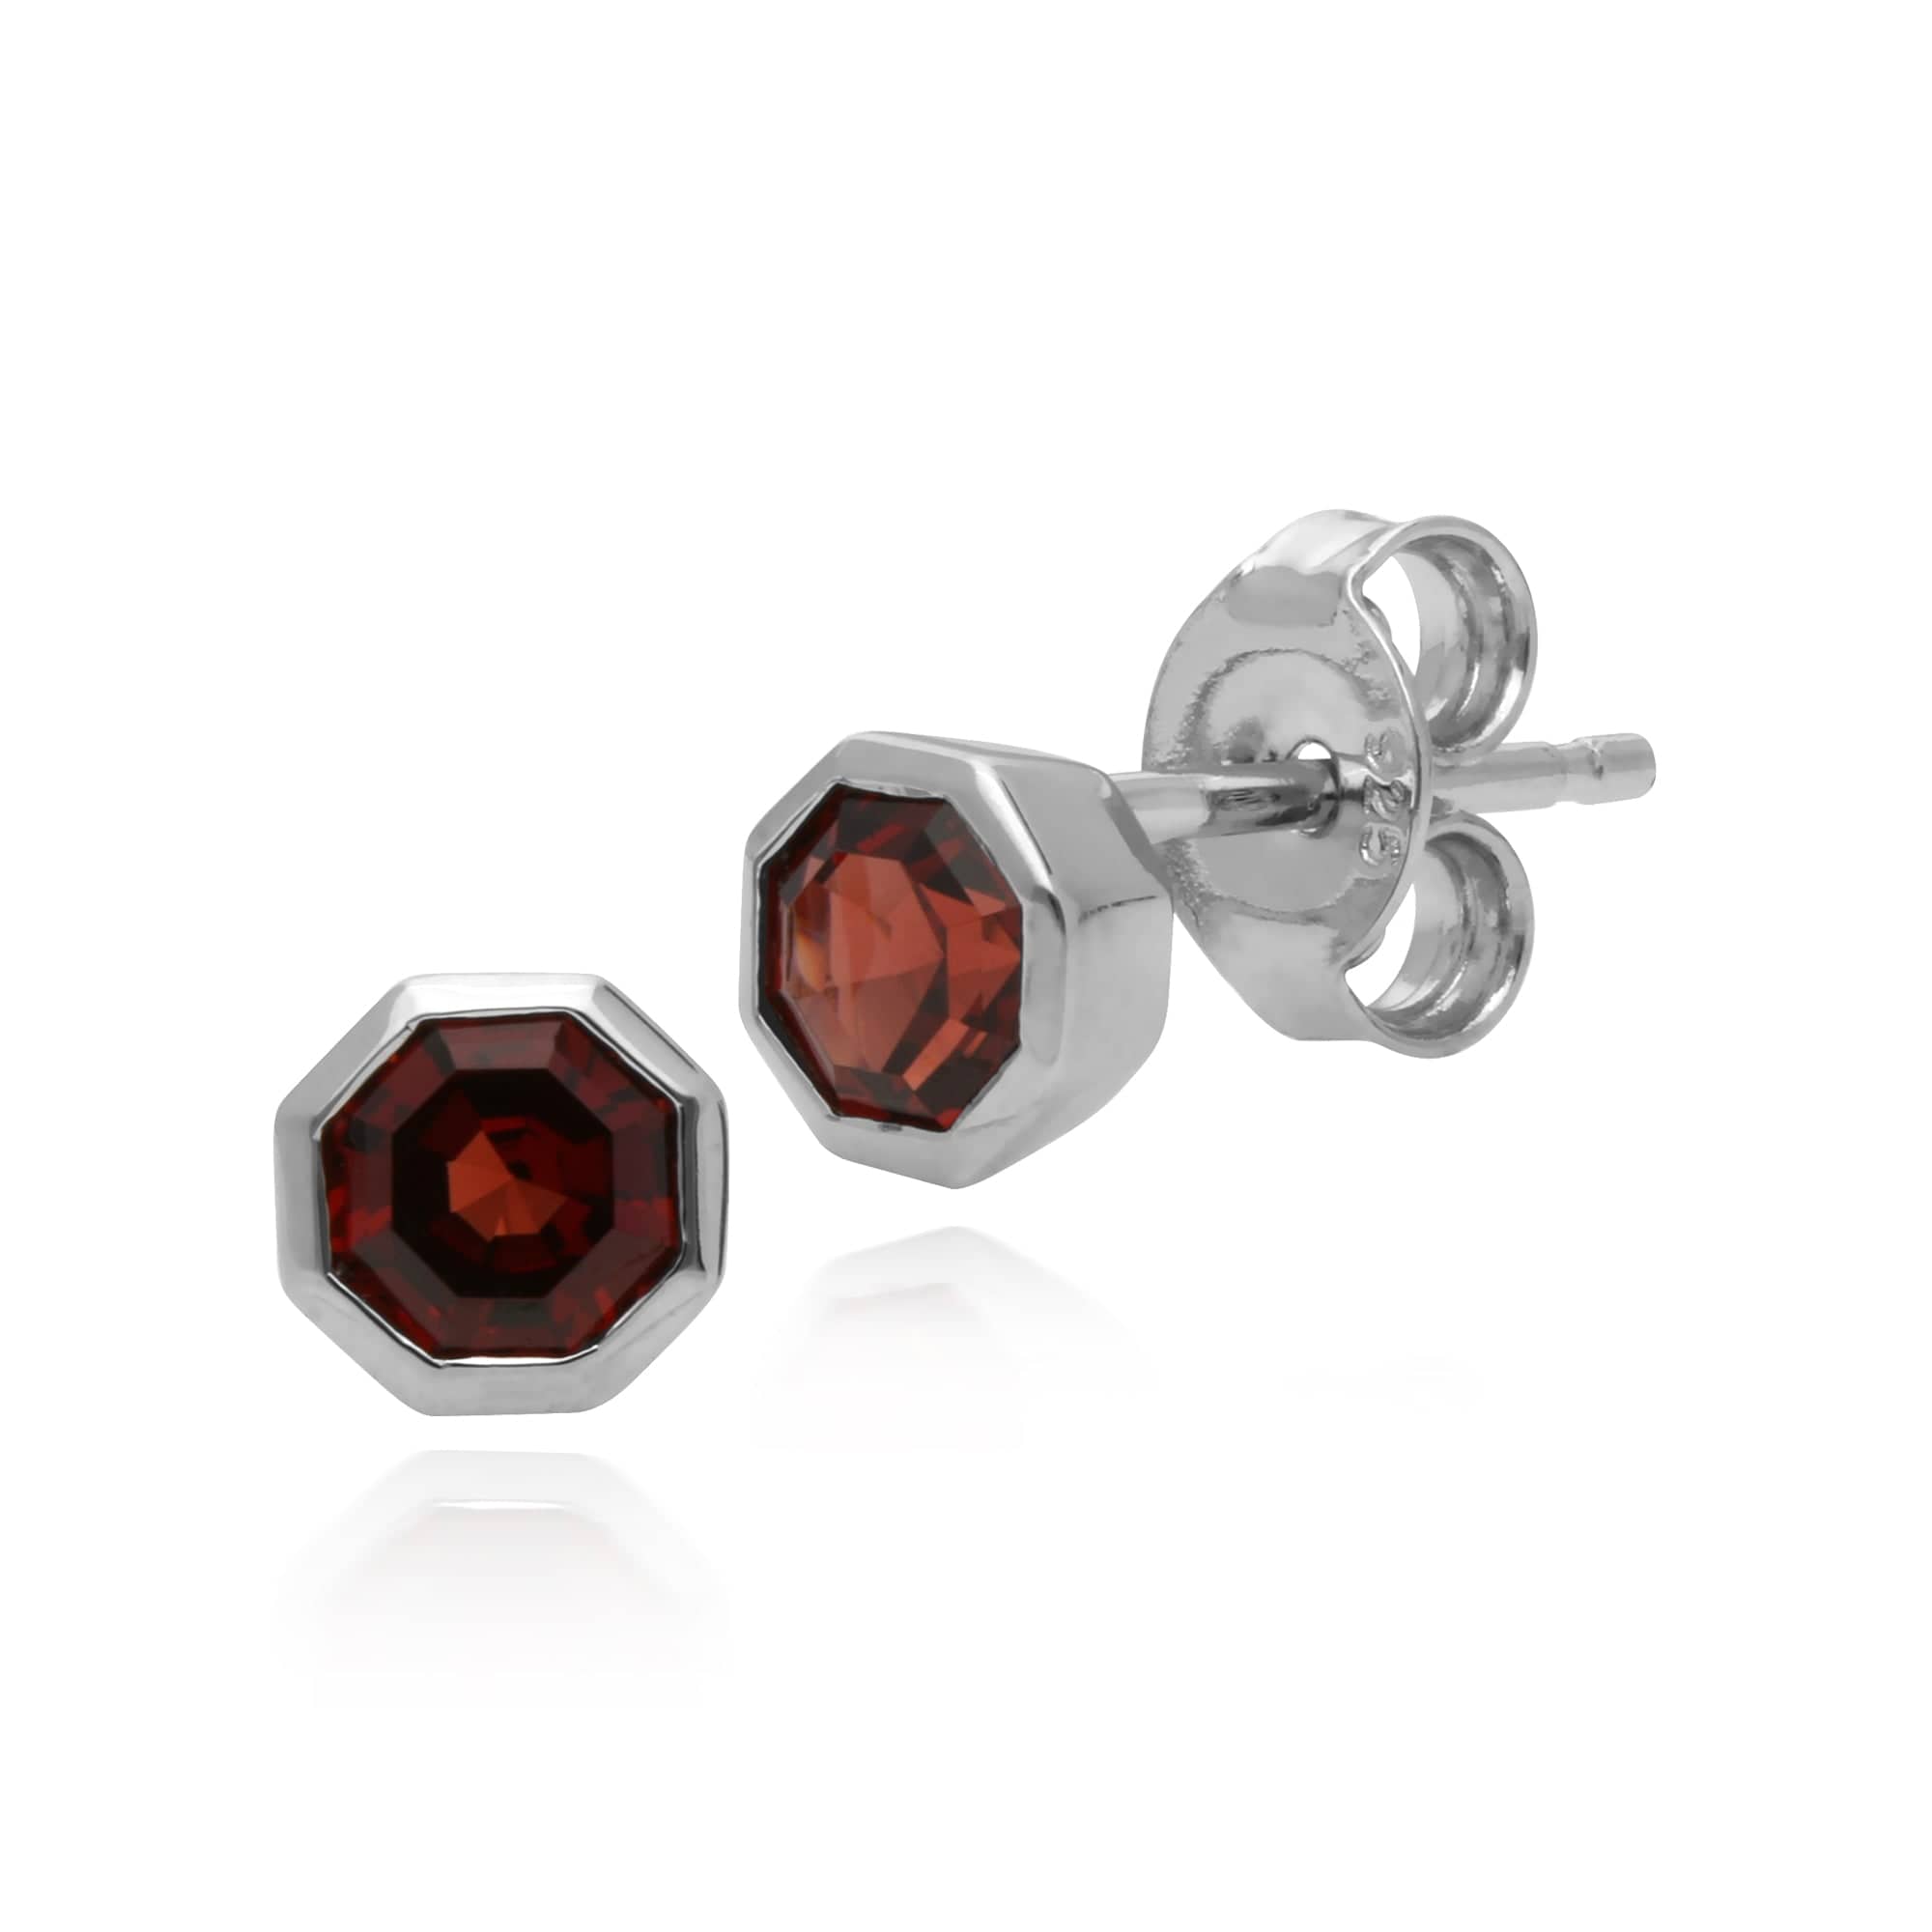 270E025003925-270P025103925 Geometric Octagon Garnet Bezel Stud Earrings & Pendant Set in 925 Sterling Silver 2